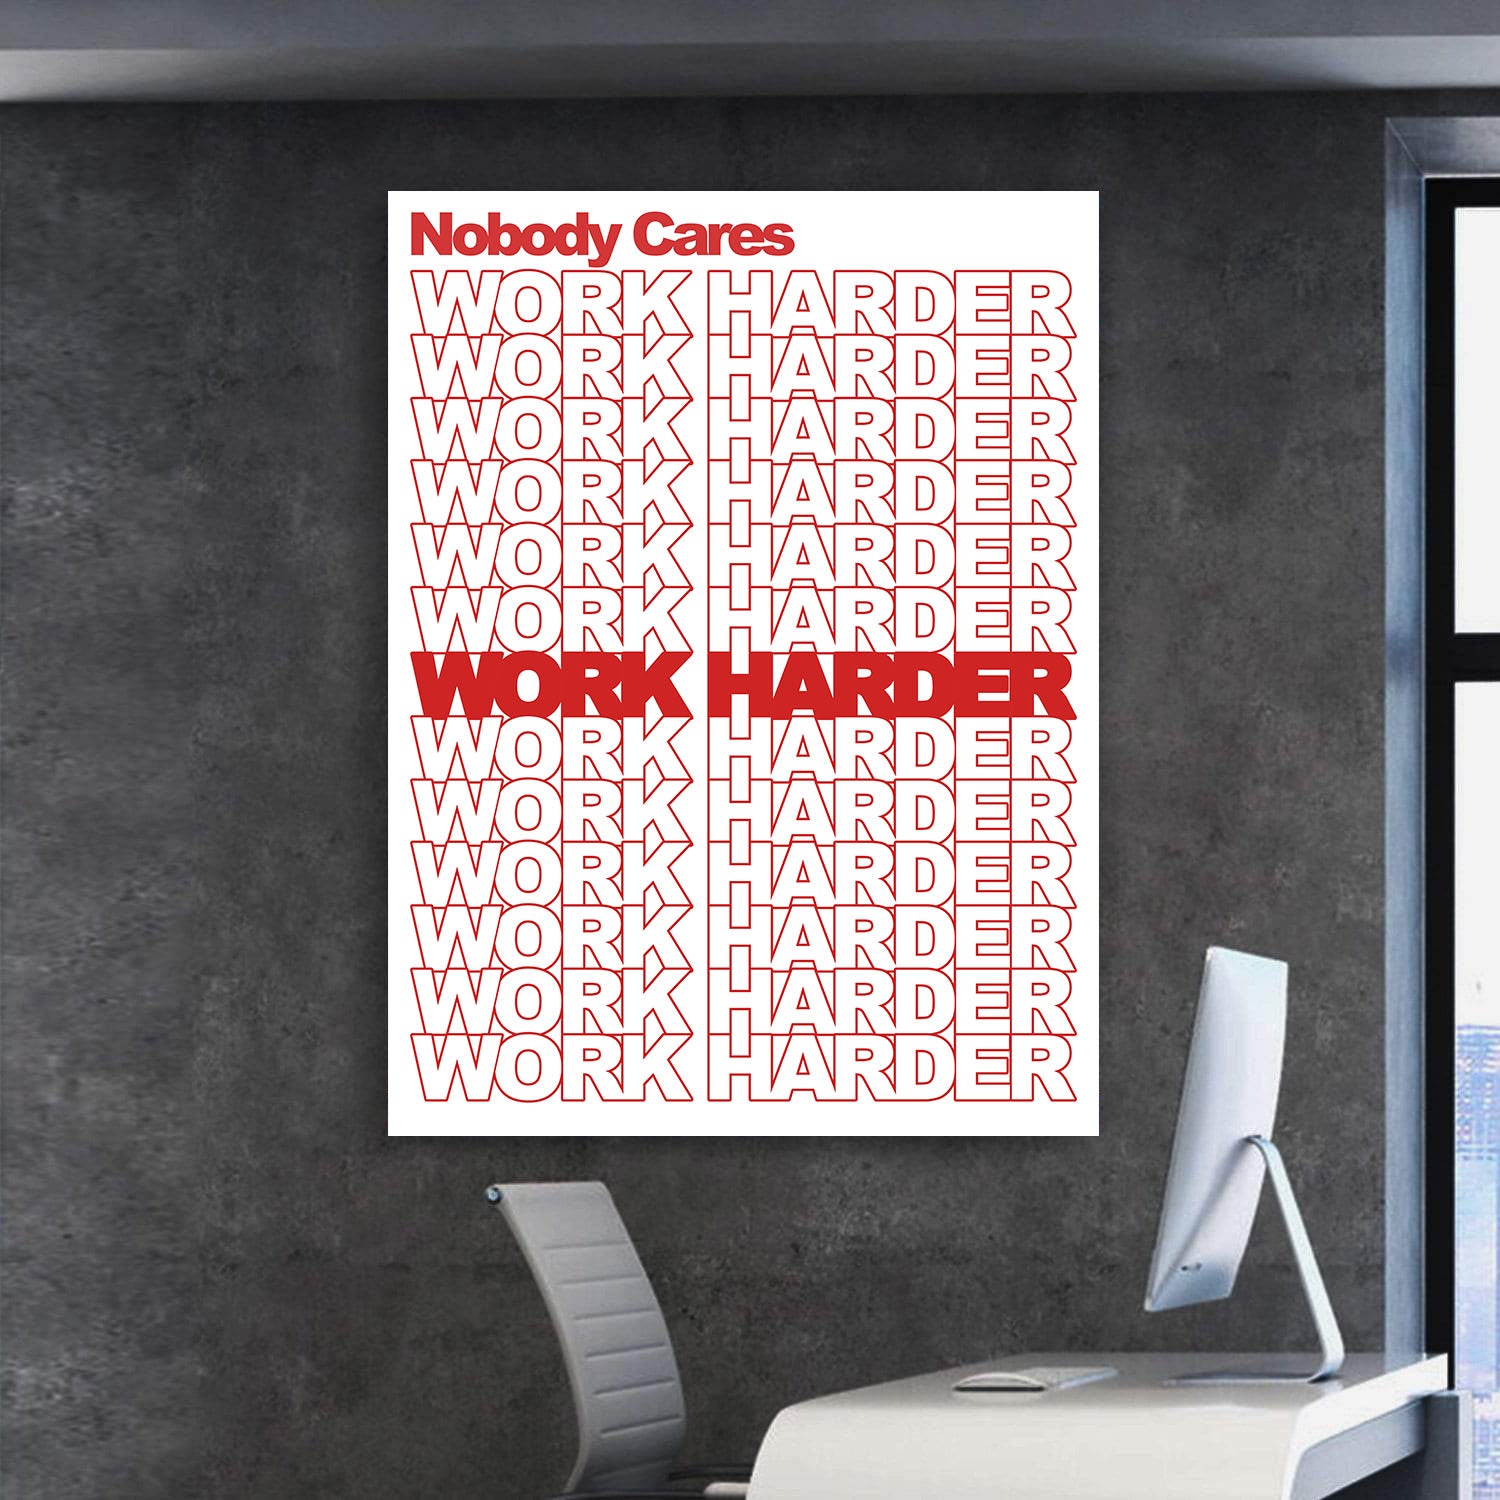 Work Harder - Stock Buddies -Canvas Wraps